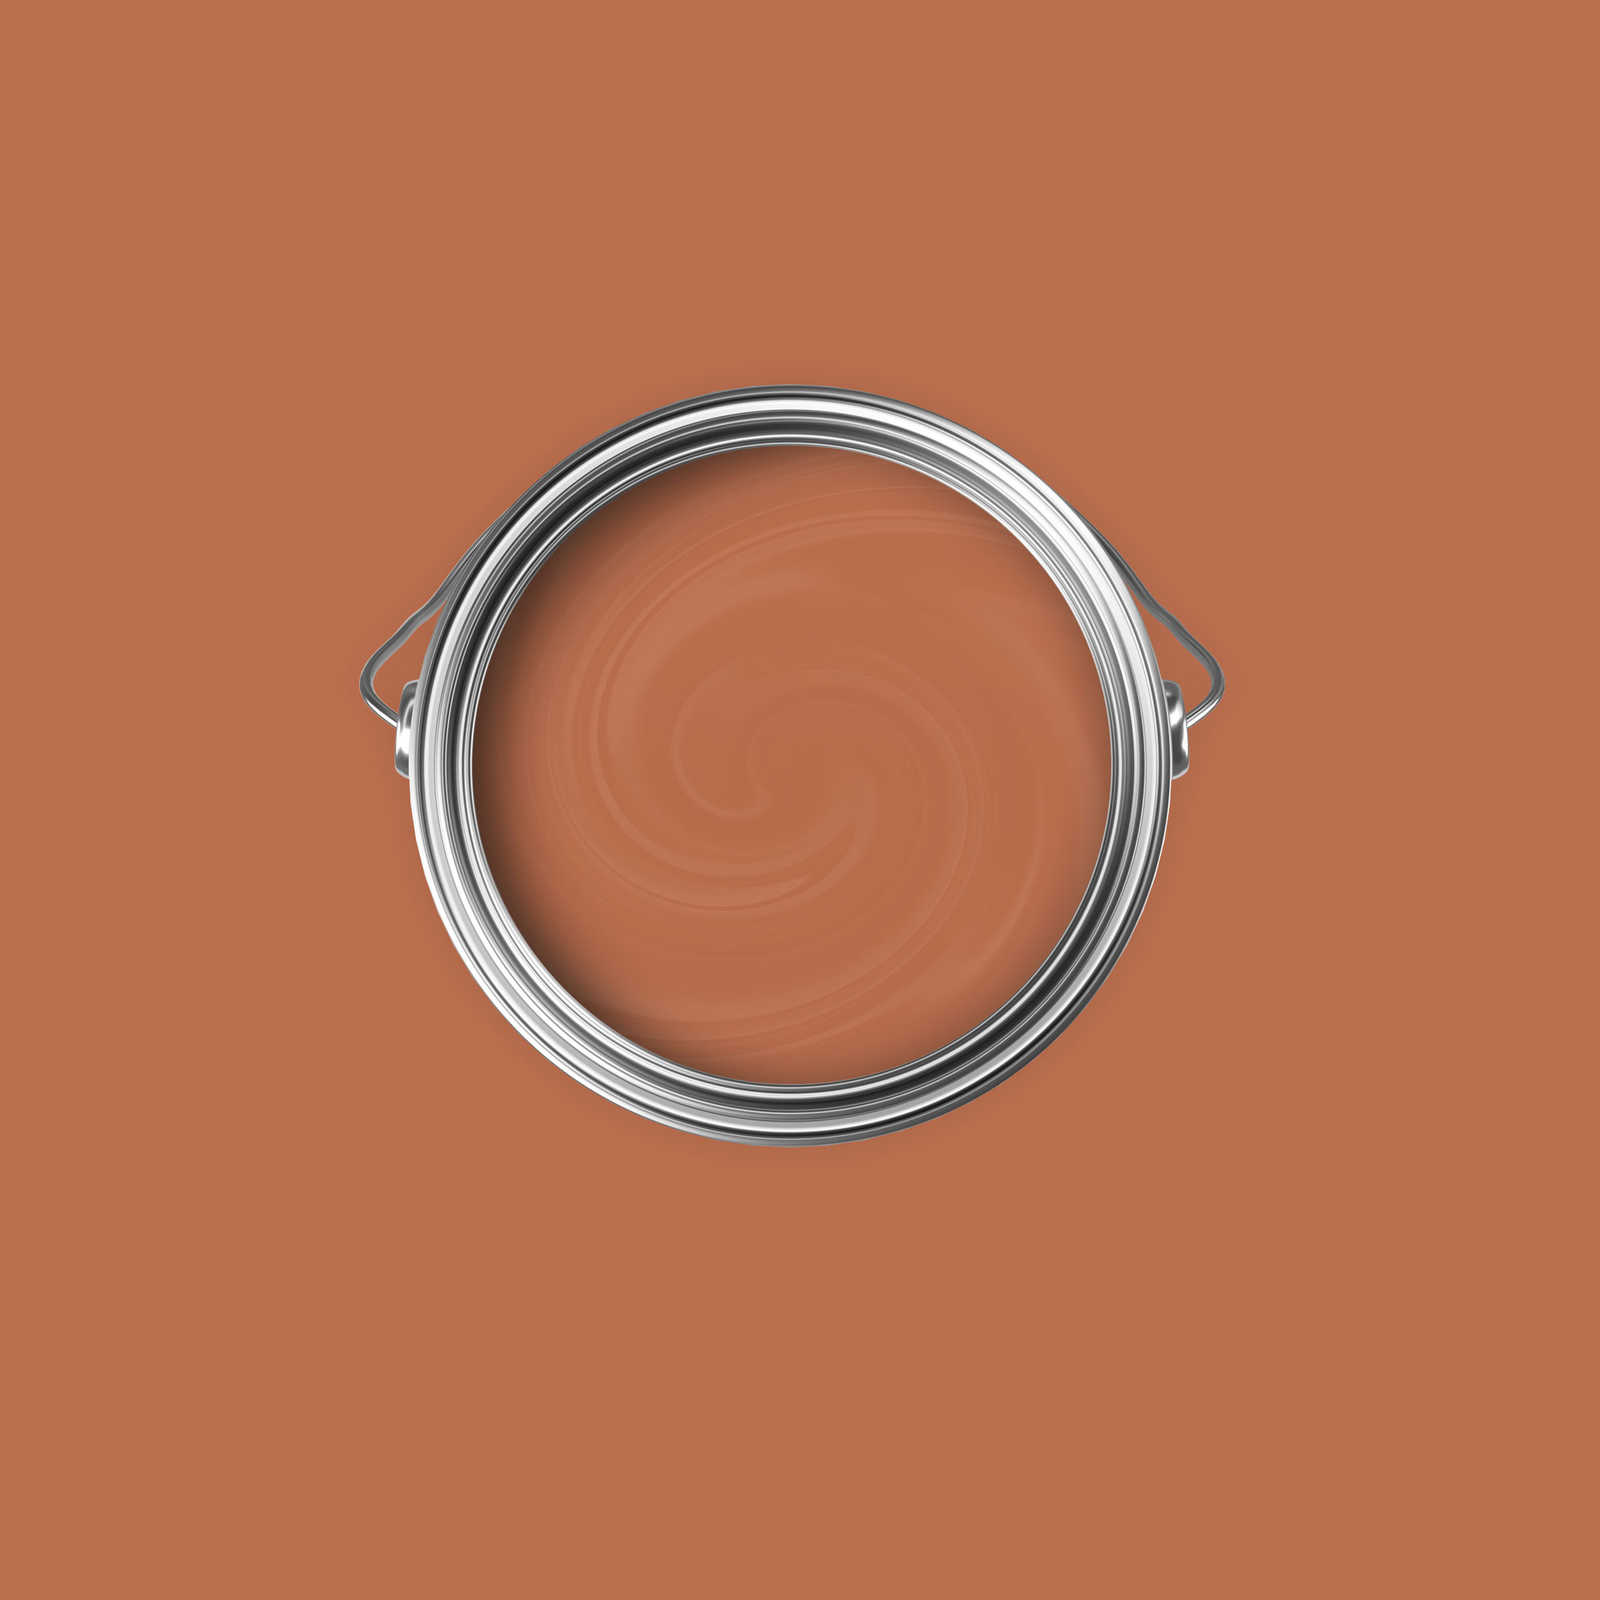             Premium Muurverf Stimulerend Koper »Pretty Peach« NW905 – 2,5 Liter
        